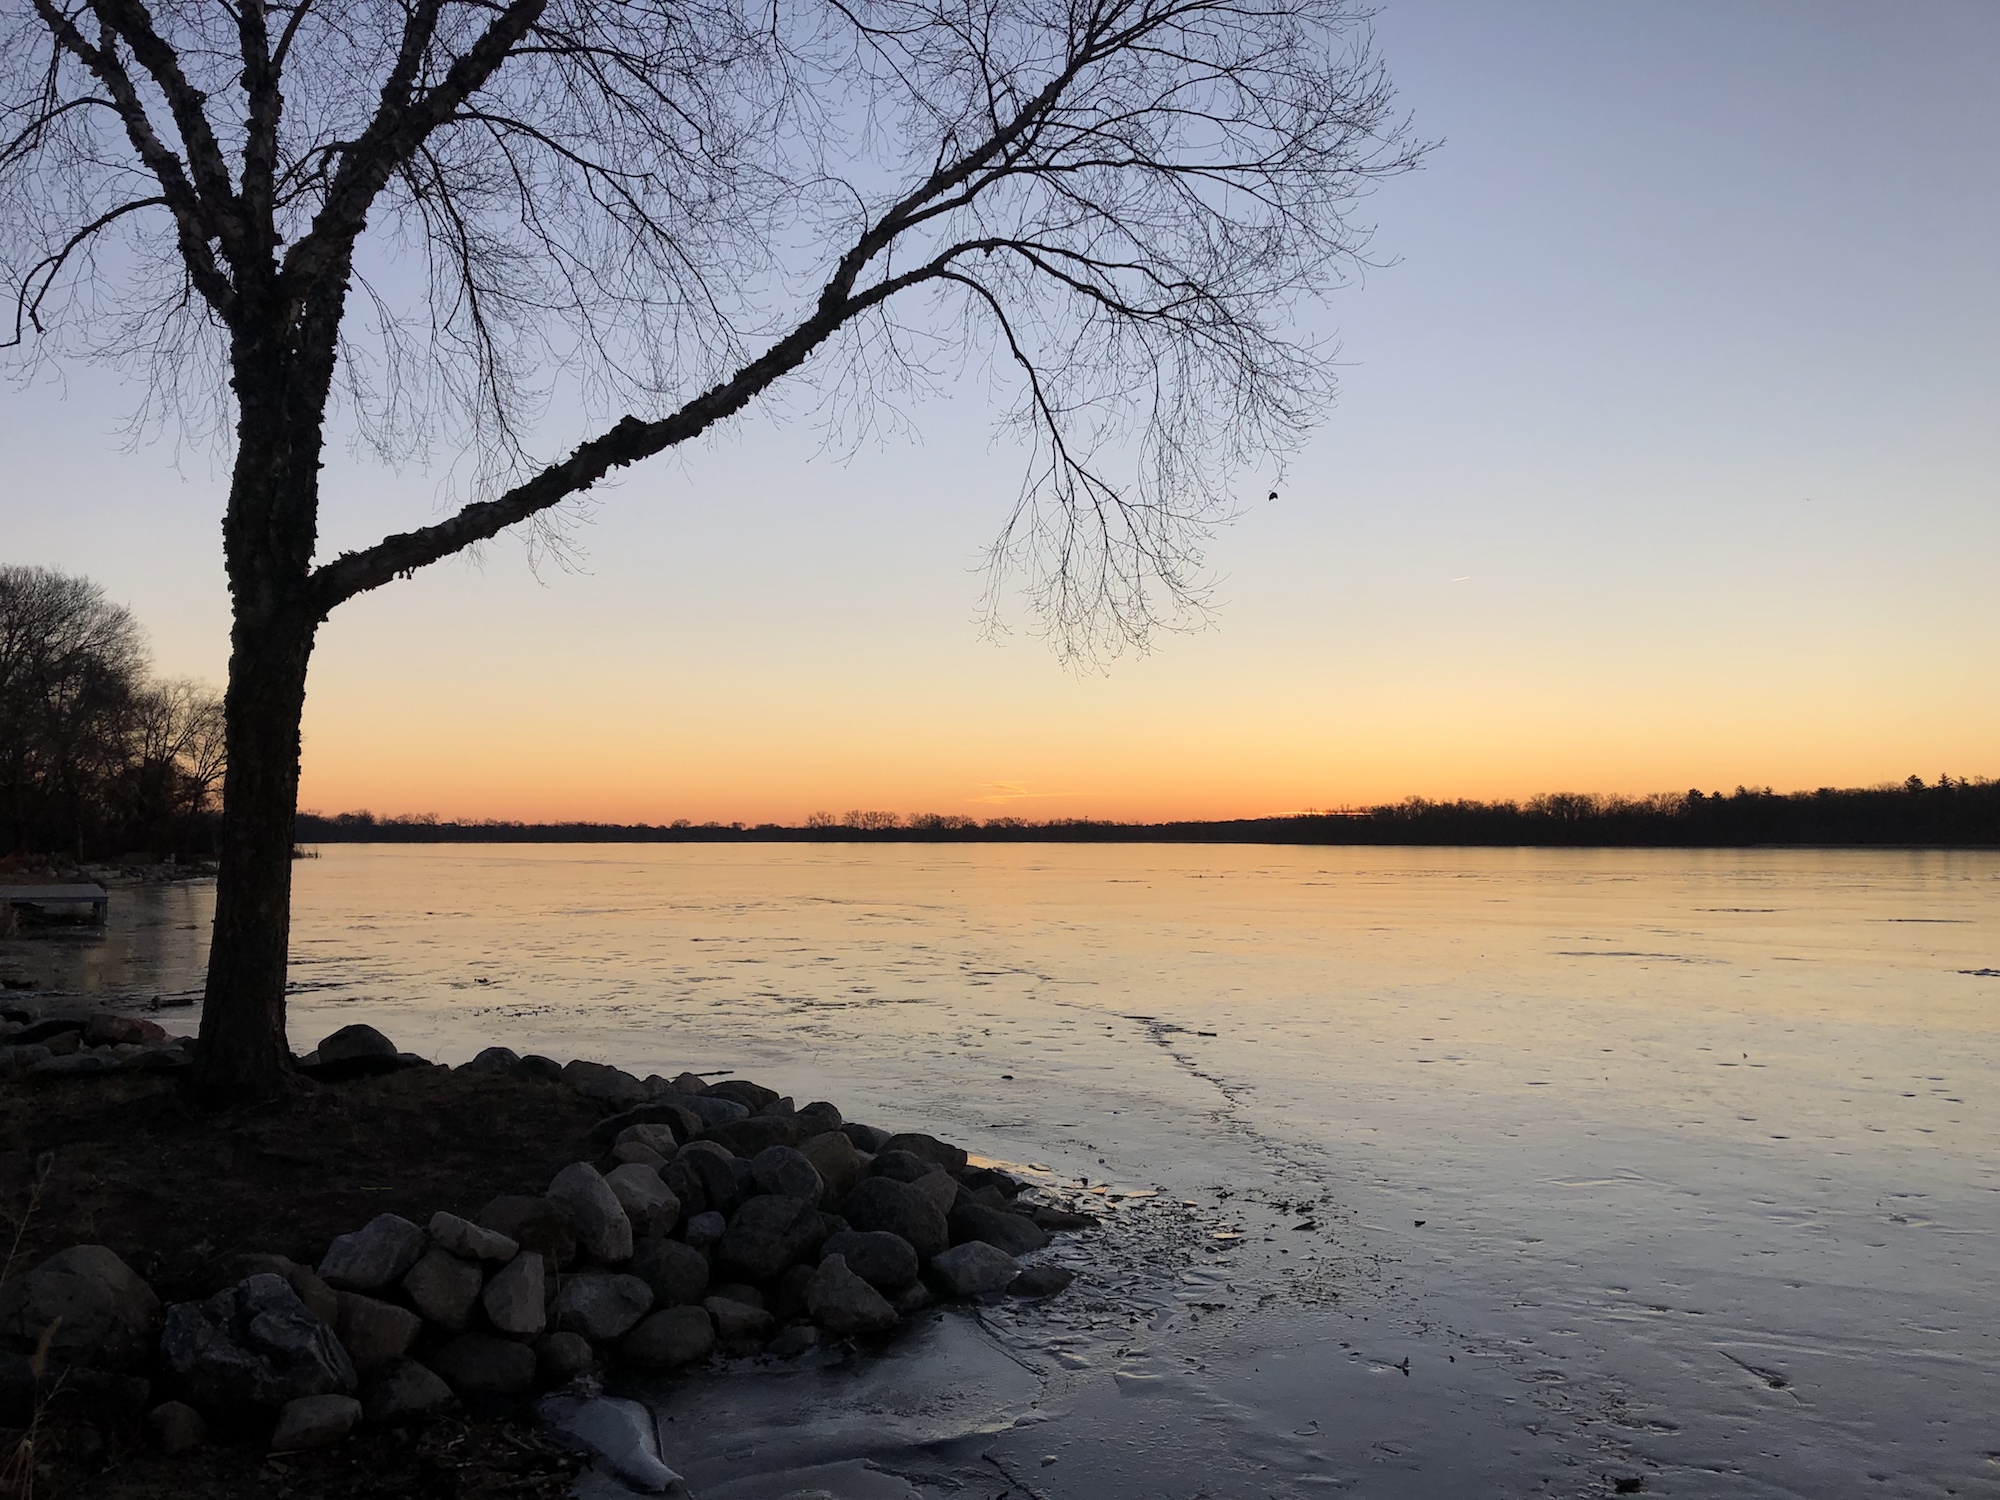 Lake Wingra on December 24, 2018.